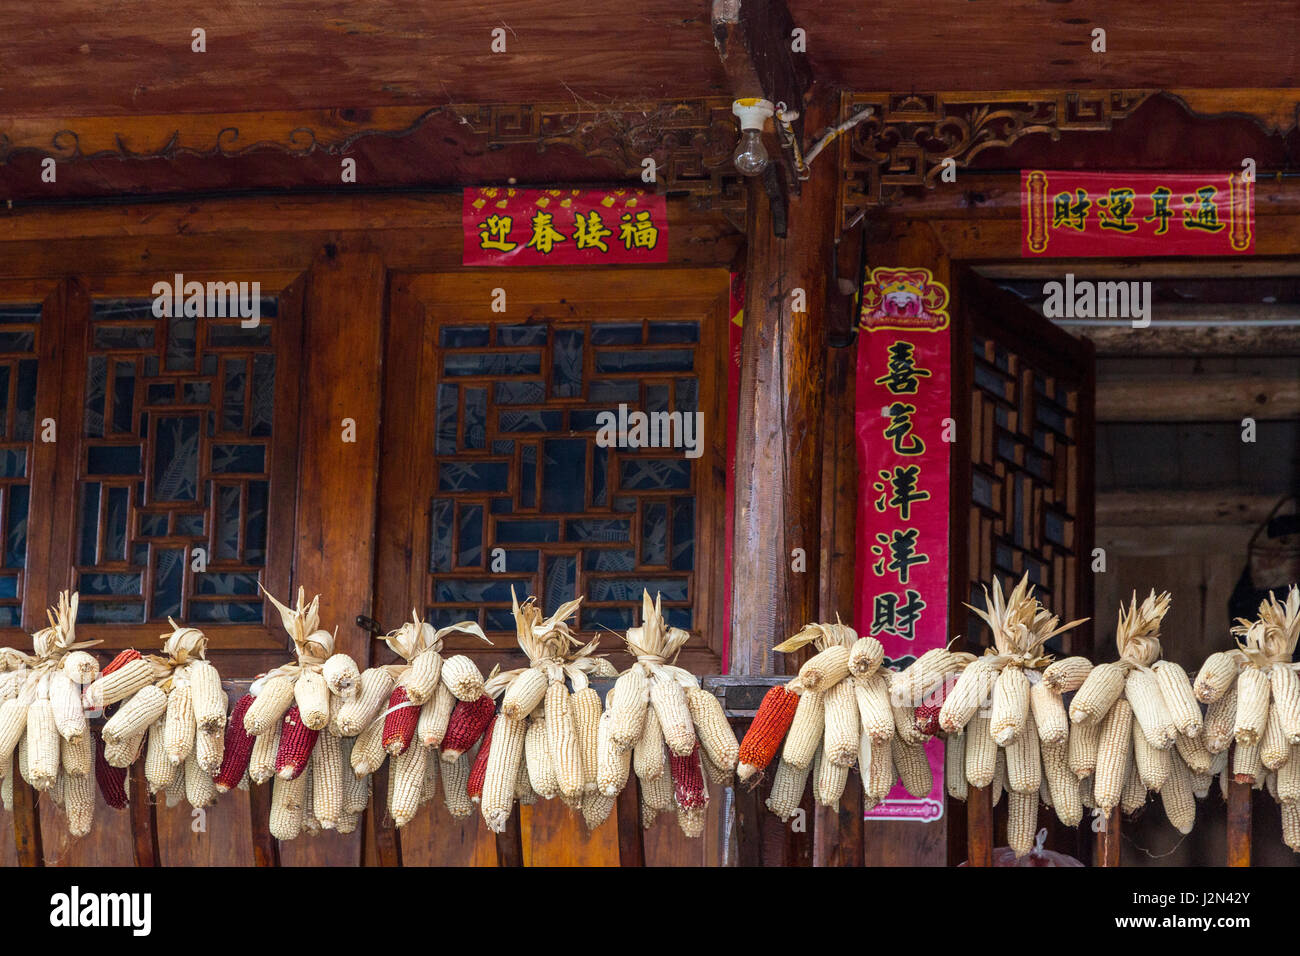 Matang, Village Gejia du Guizhou, en Chine. Épis de maïs accroché sur main courante à l'entrée de la Chambre. Fête du printemps (Nouvel An) morte autour de la porte. Banque D'Images